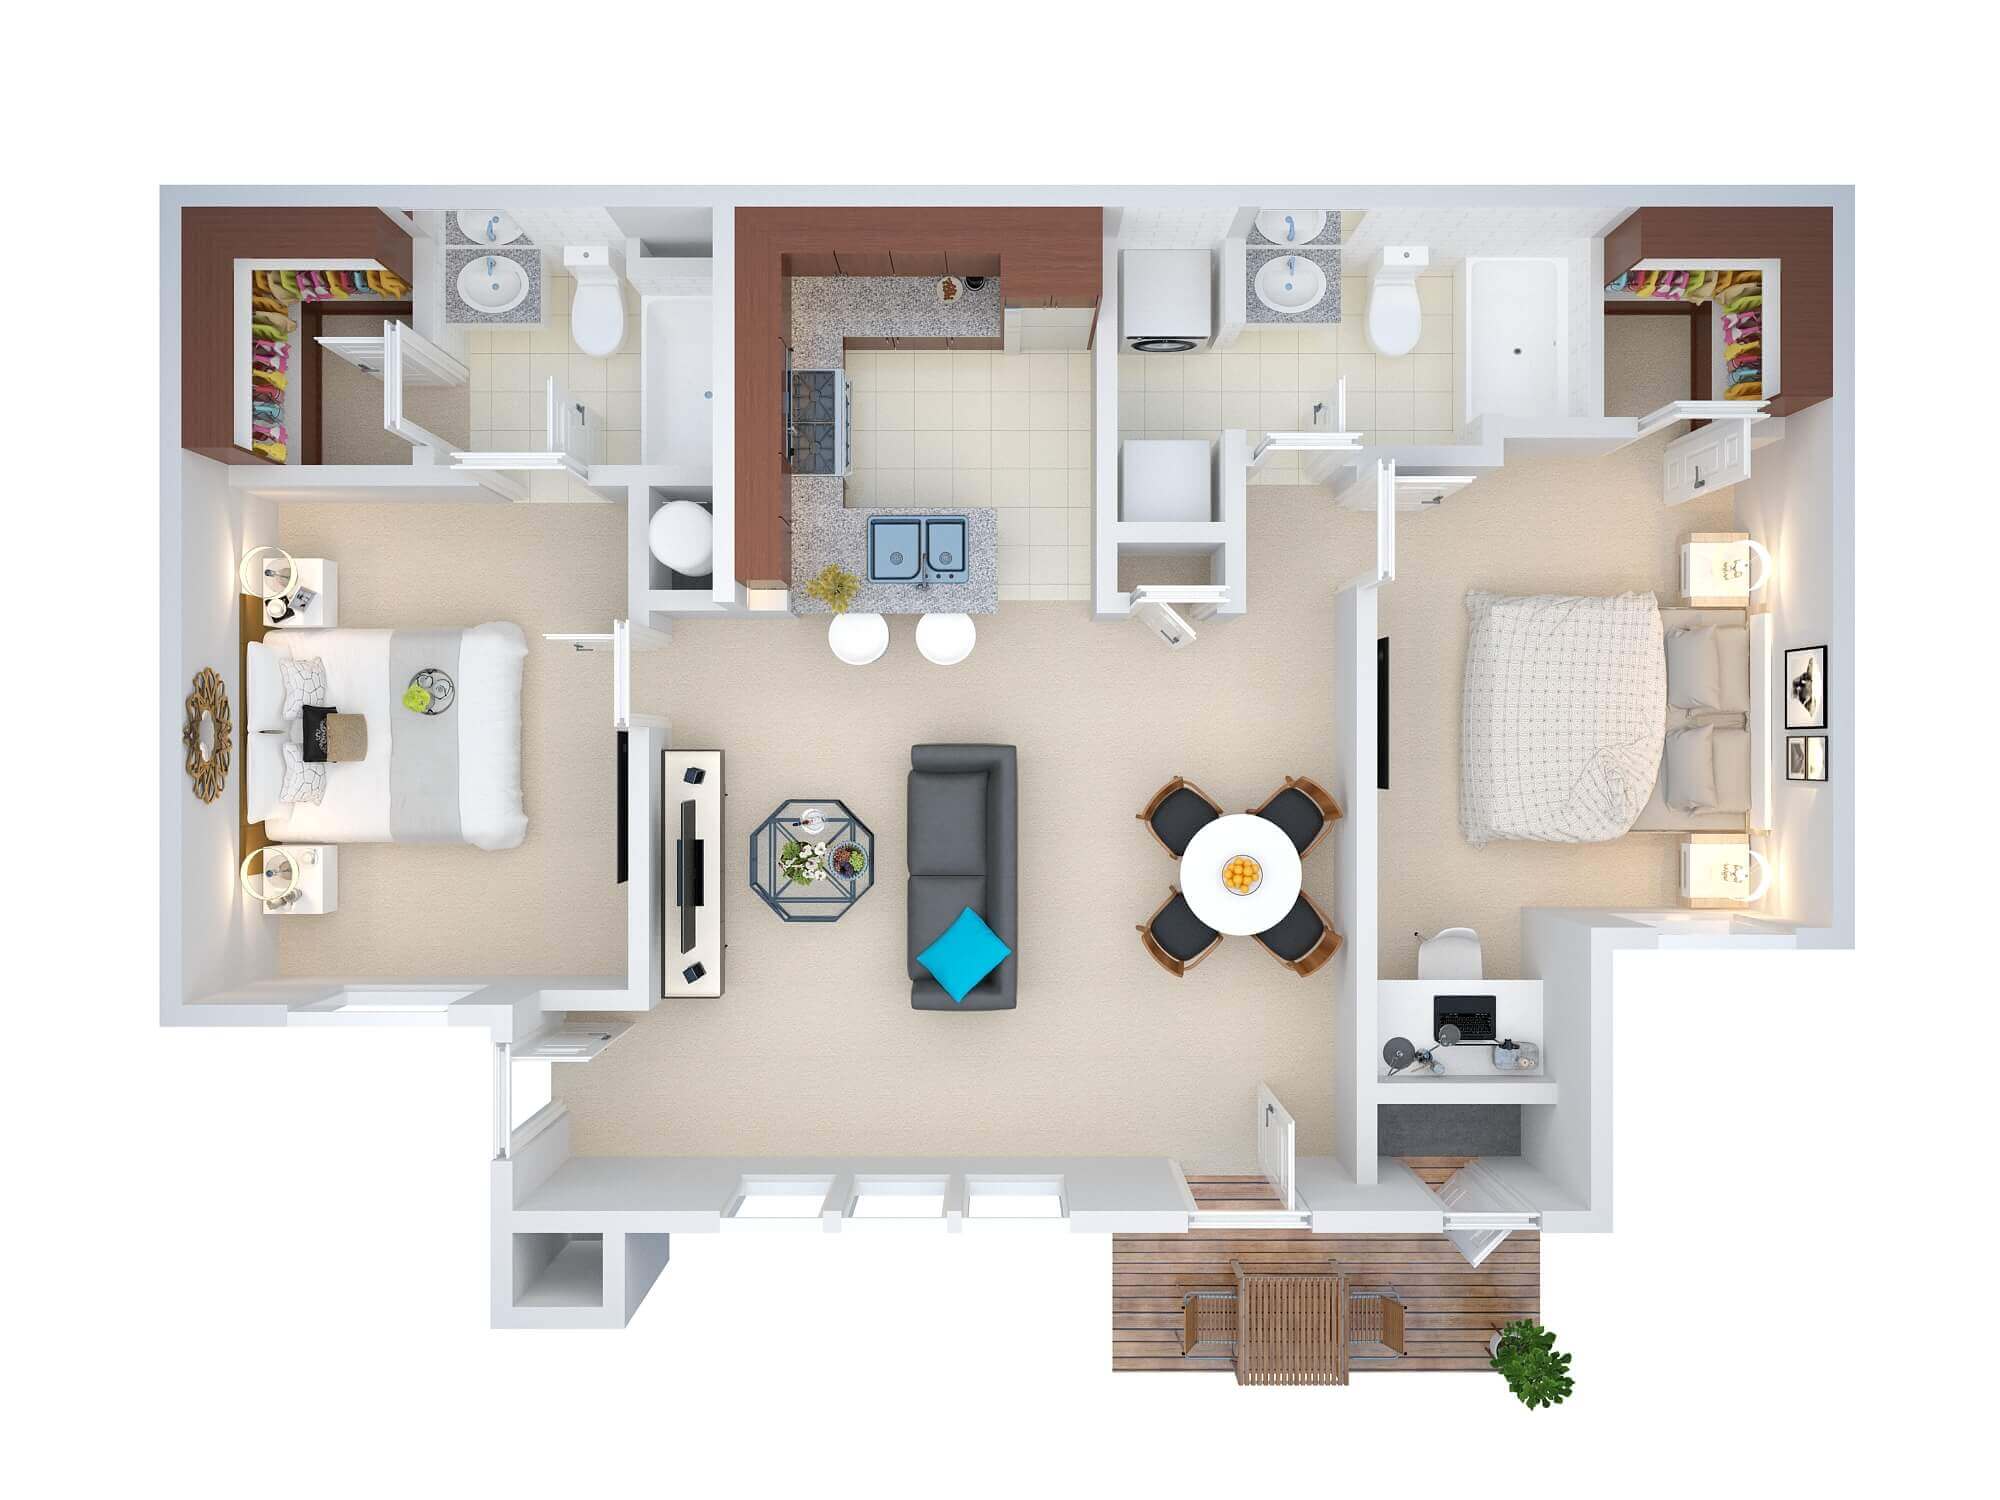 Real Estate 3D Floor Plans Design / Rendering Samples